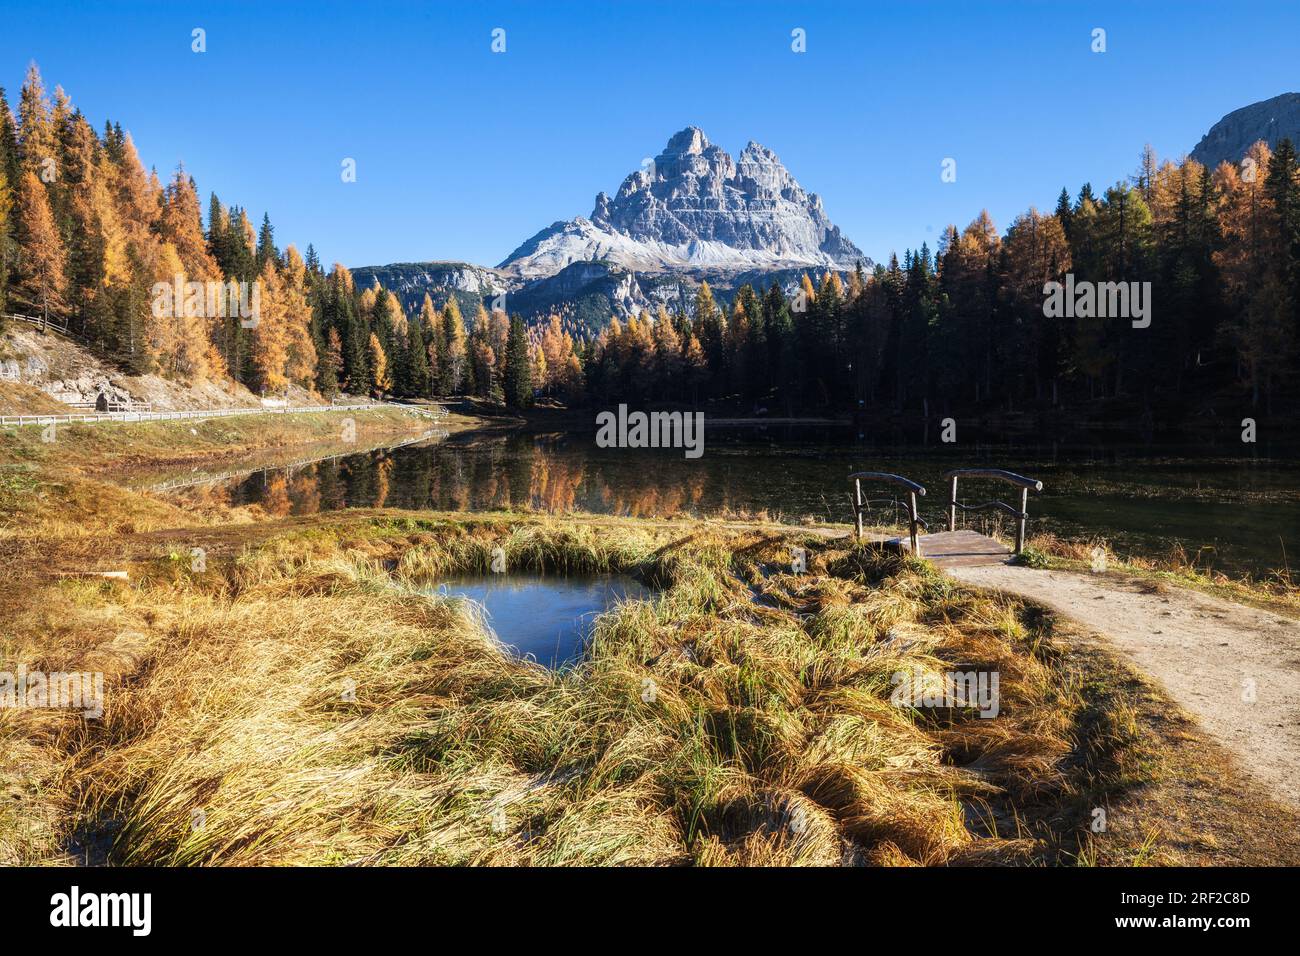 Majestätische Landschaft des Sees Antorno mit dem berühmten Dolomiten-Gipfel des Tre Cime di Lavaredo im Hintergrund. Stockfoto